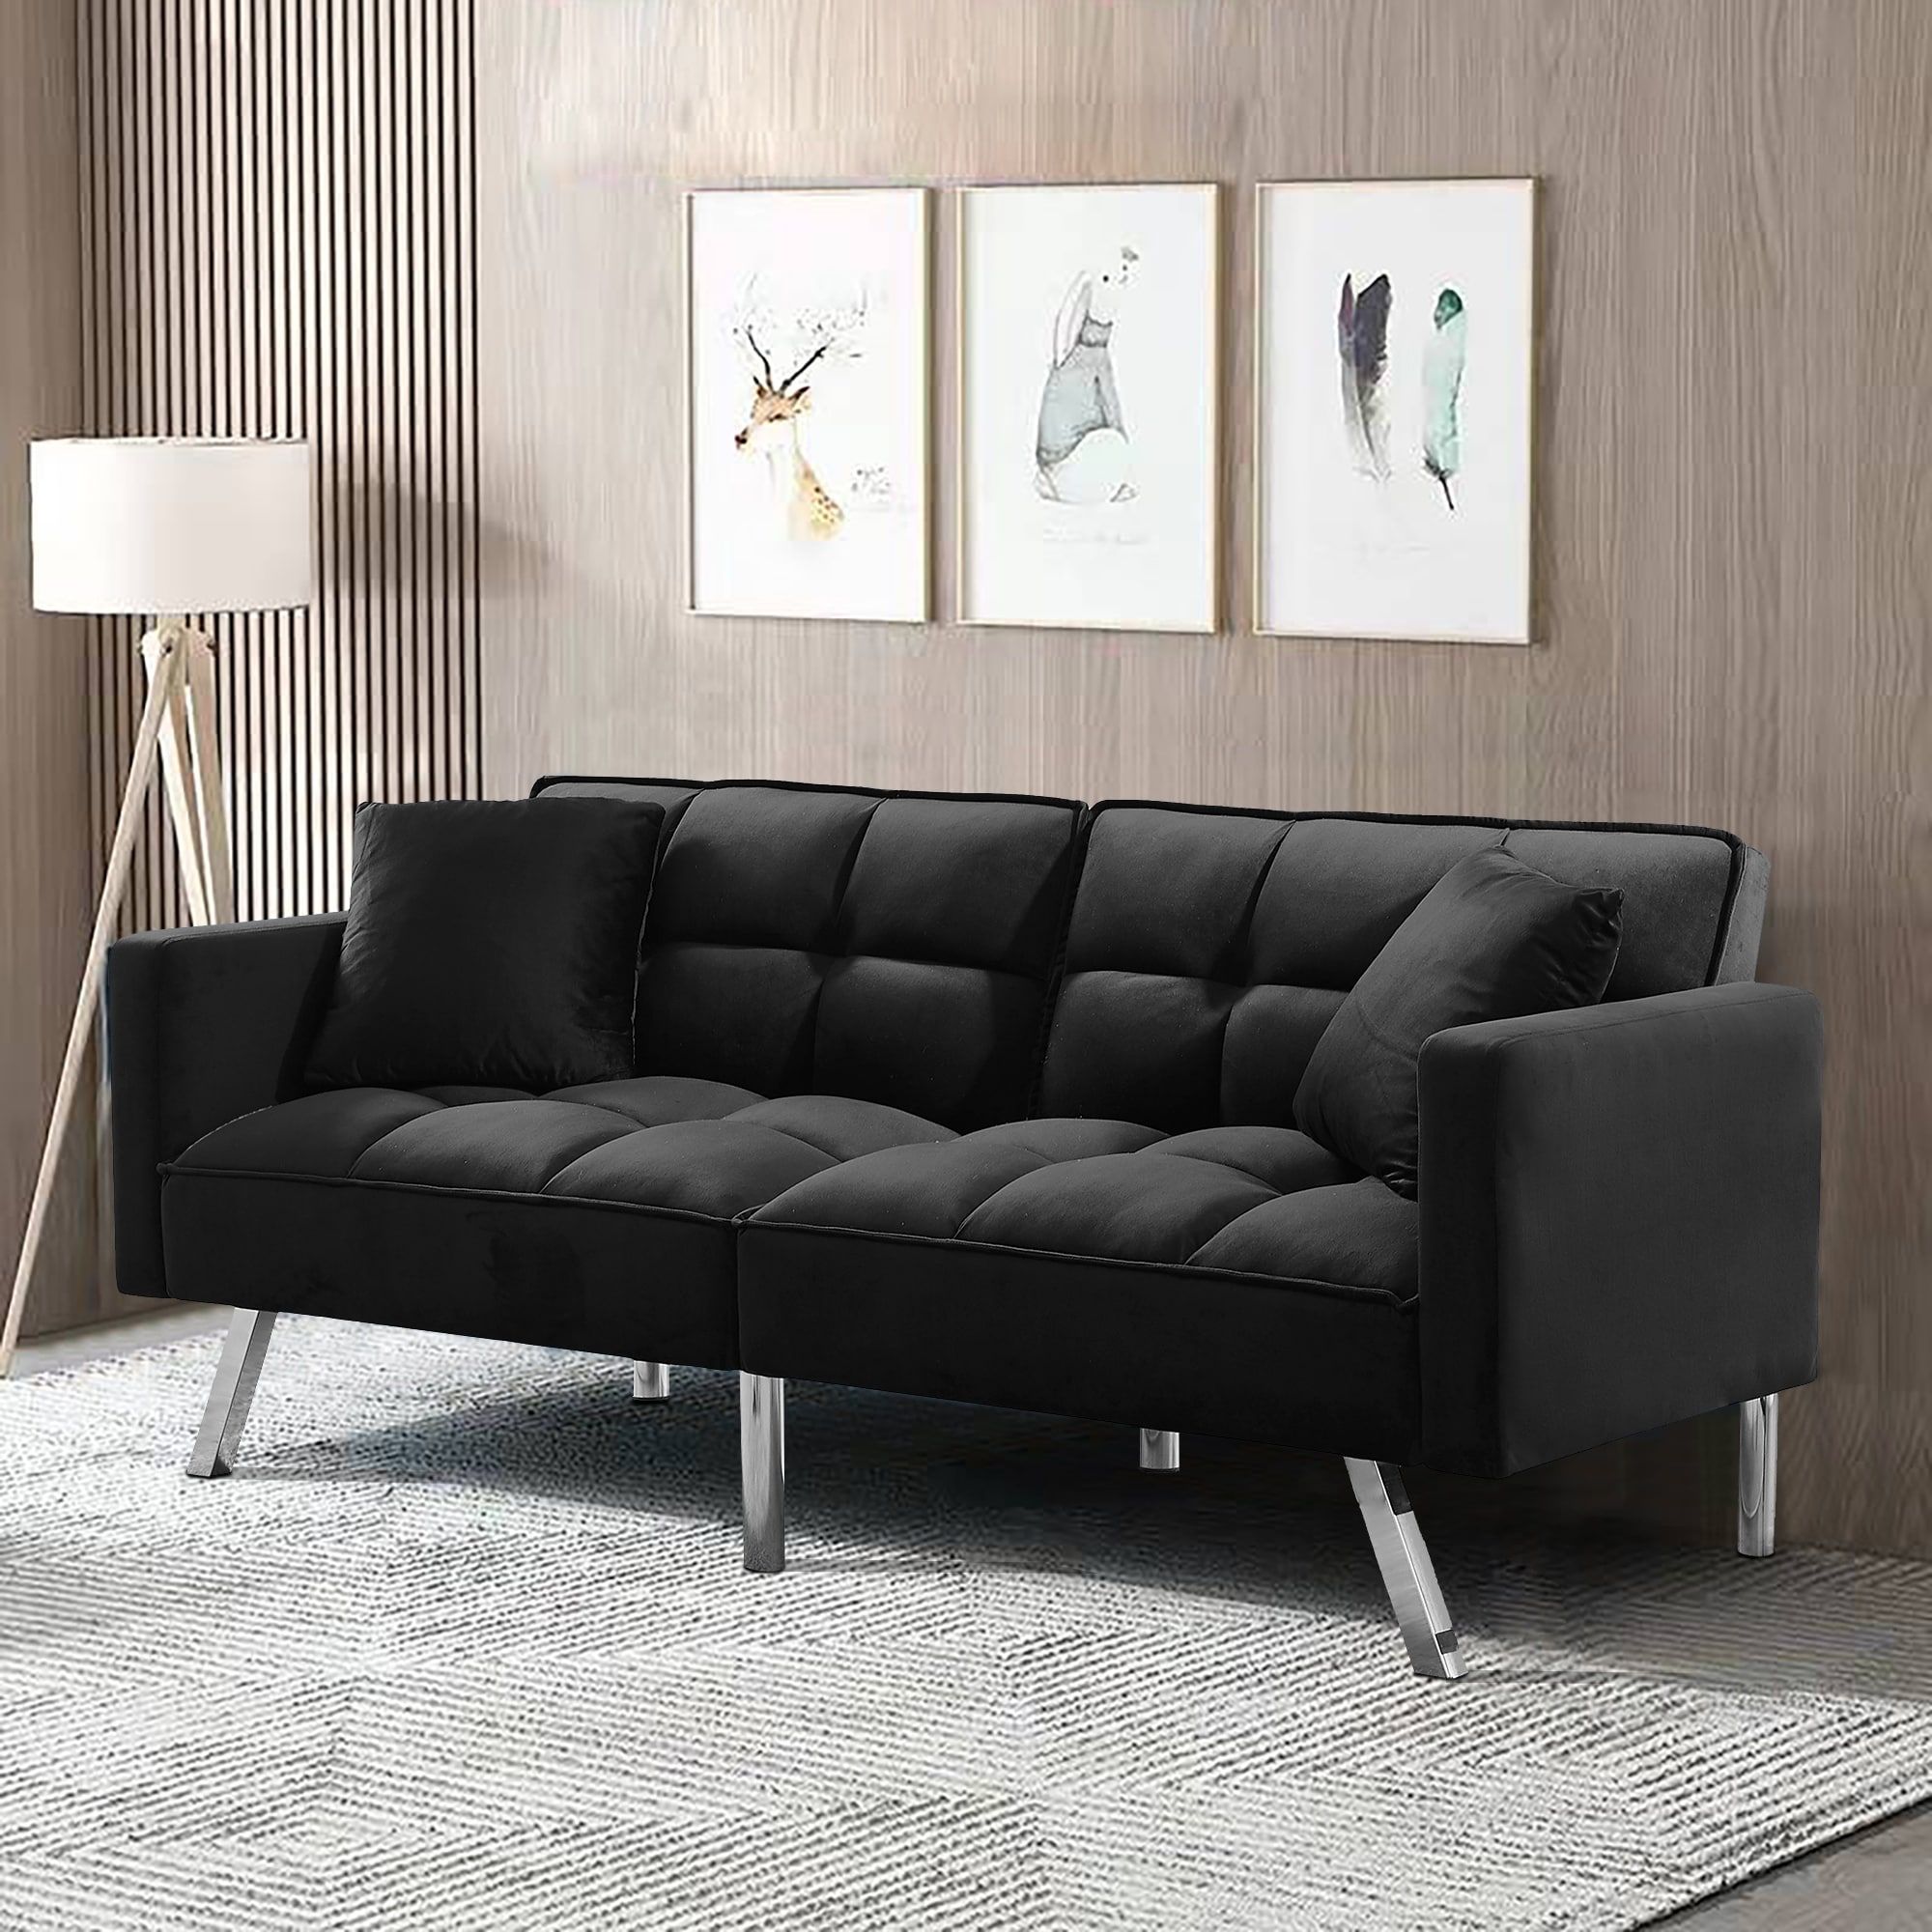 Mid Century Modern Design Velvet 2 Seater Black Sofa Bed With 2 Tufted Back  For Family Living Rooms – Bed Bath & Beyond – 39581821 With 2 Seater Black Velvet Sofa Beds (Photo 1 of 15)